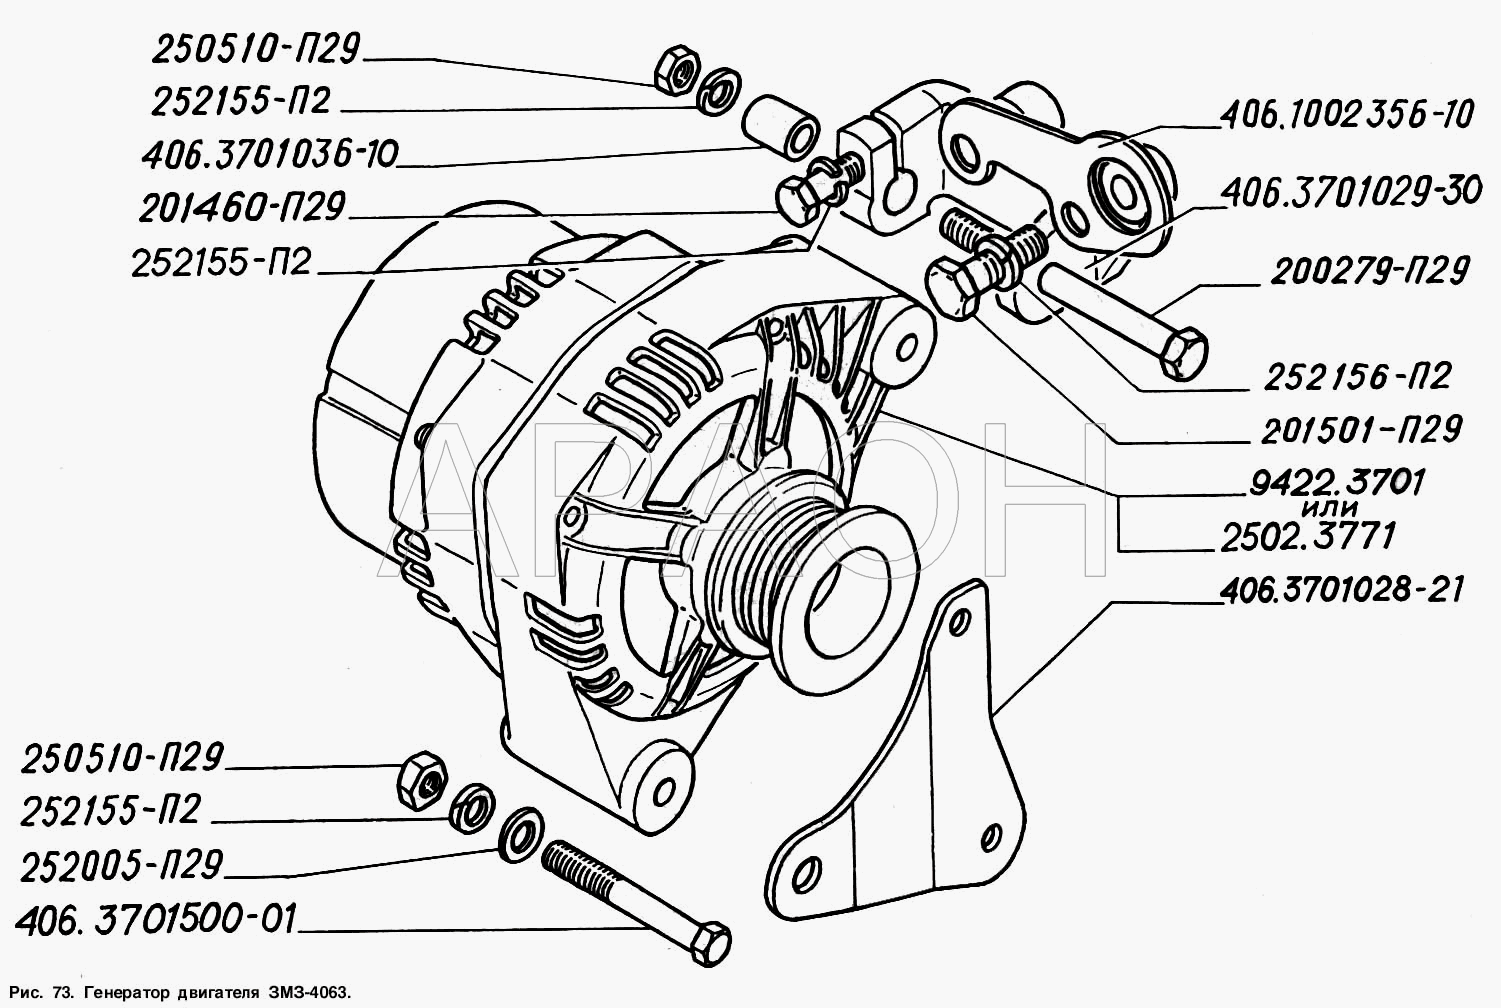 Генератор двигателя ЗМЗ-4063 ГАЗ-2217 (Соболь)